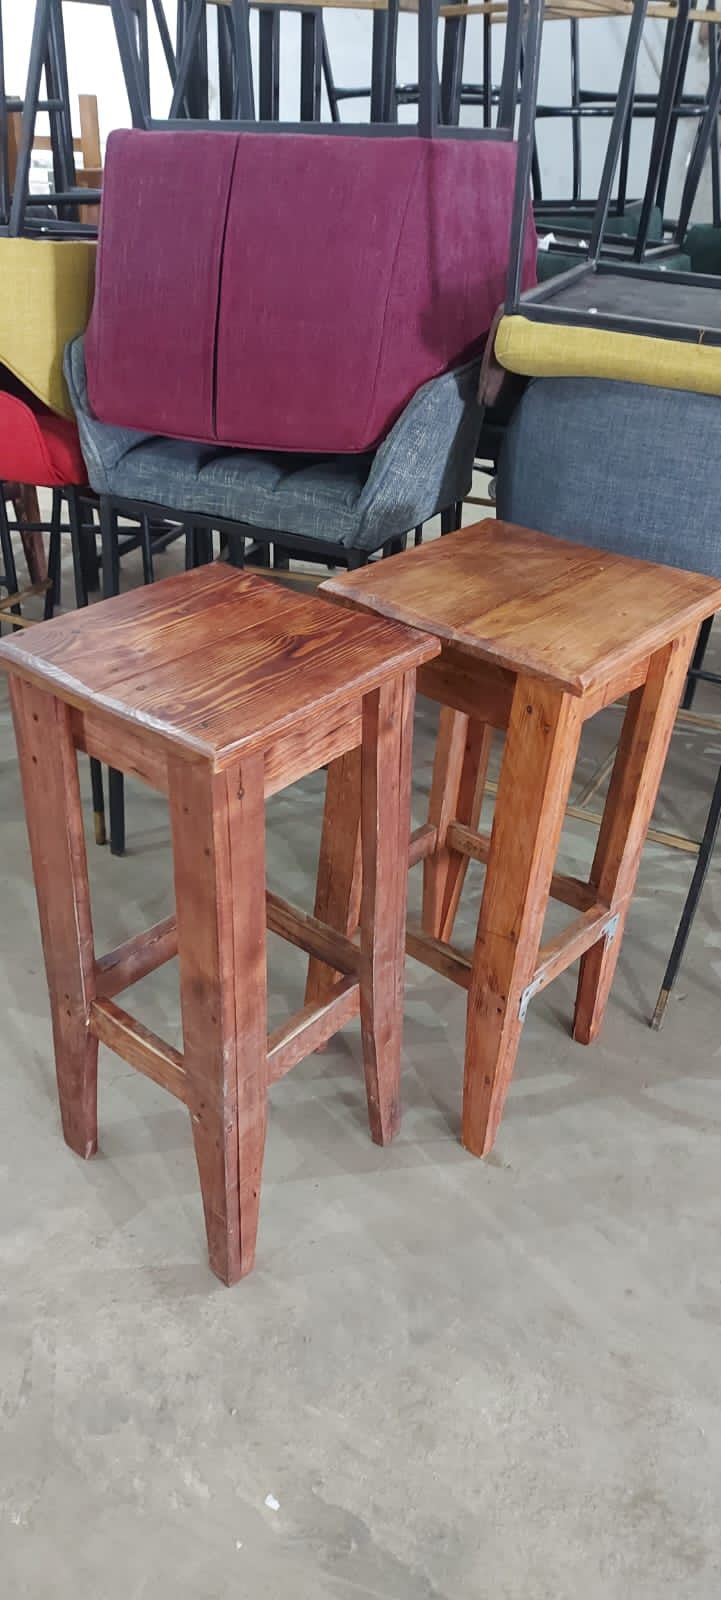 Барные стулья, столы, барный стол оборудование и мебель в Астане